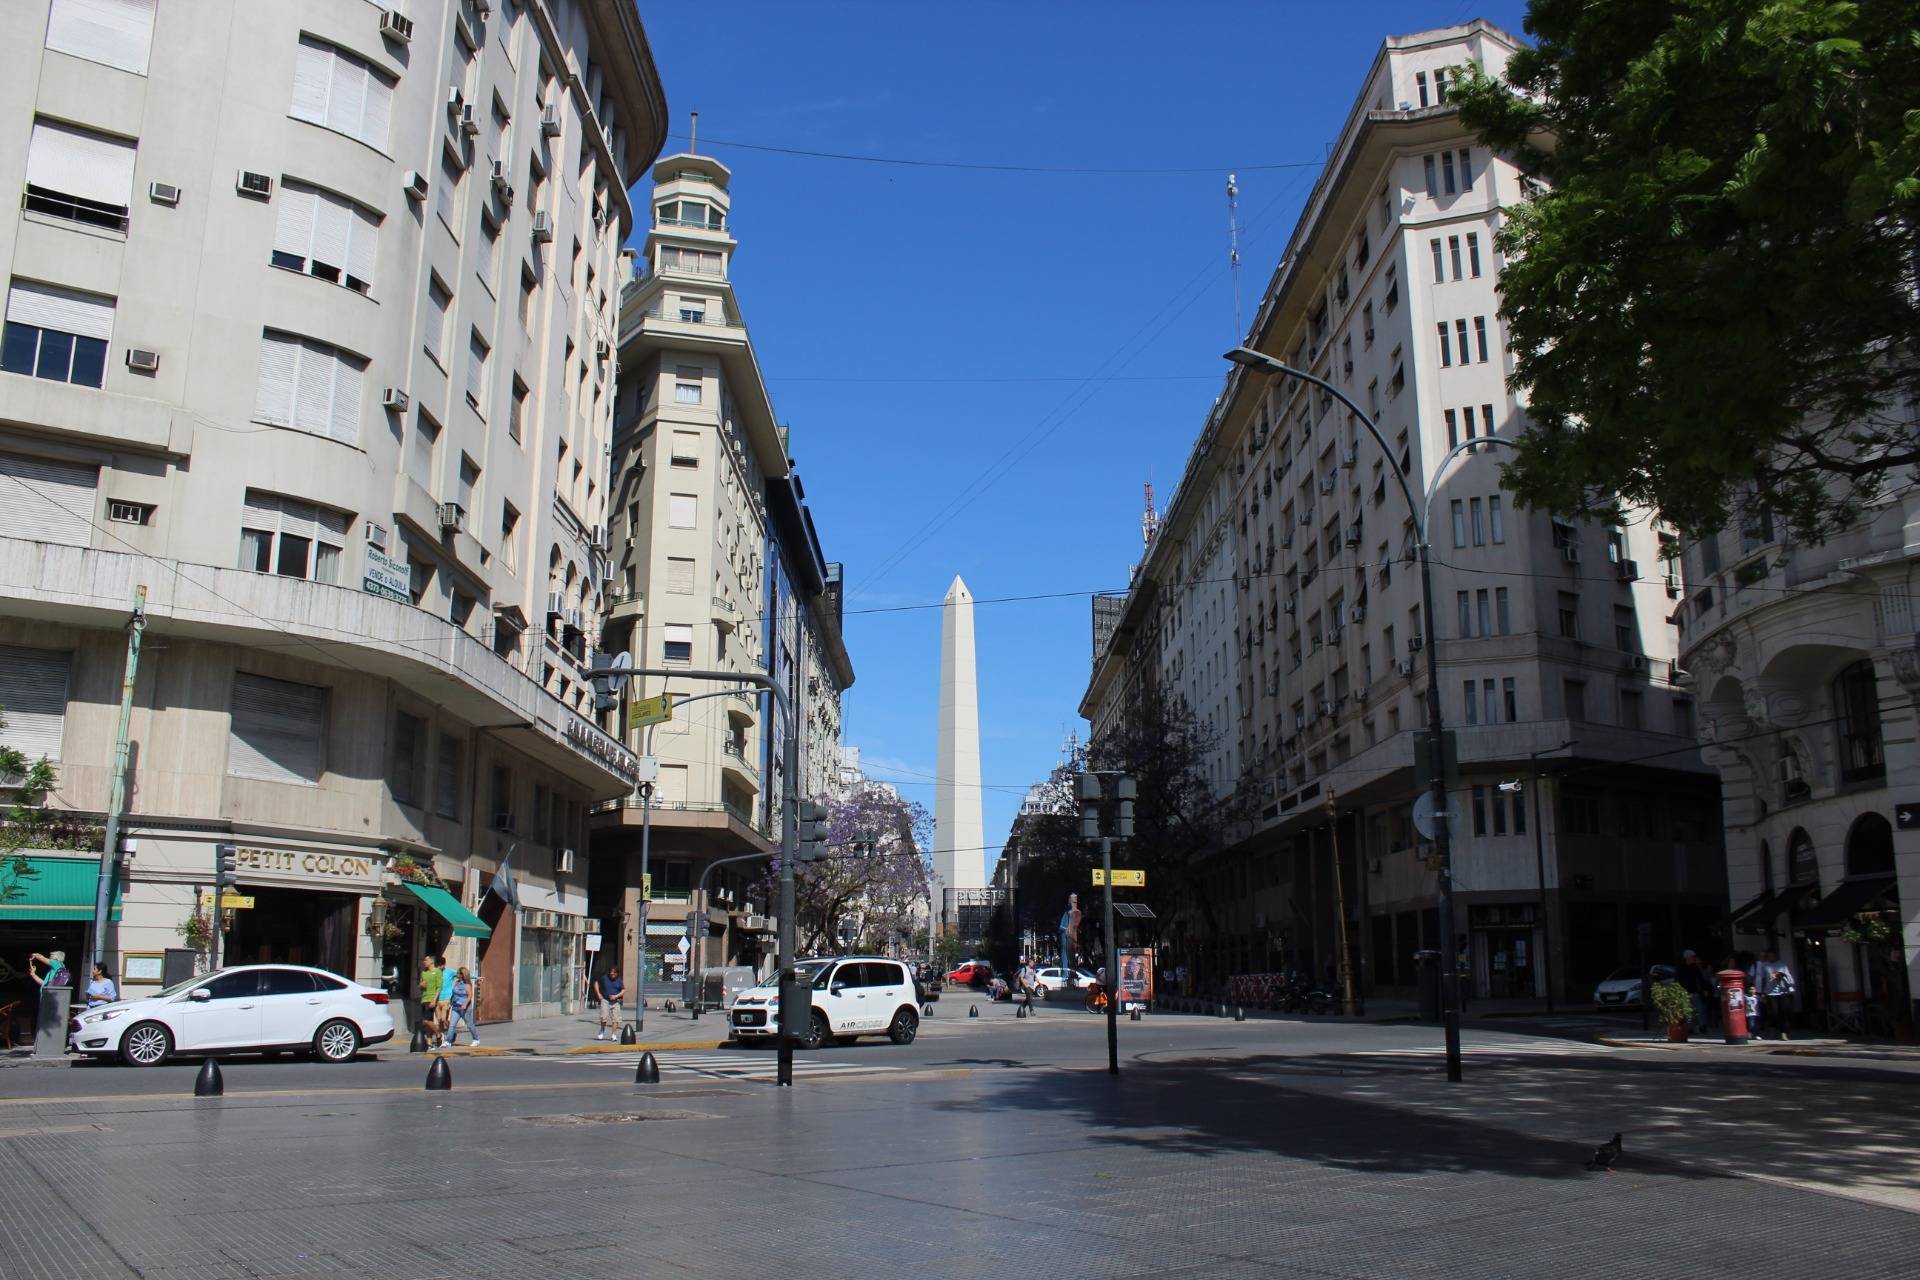 Wyjazd do Ameryki Południowej wpis nr. 24 Argentyna – Obelisco de Buenos Aires